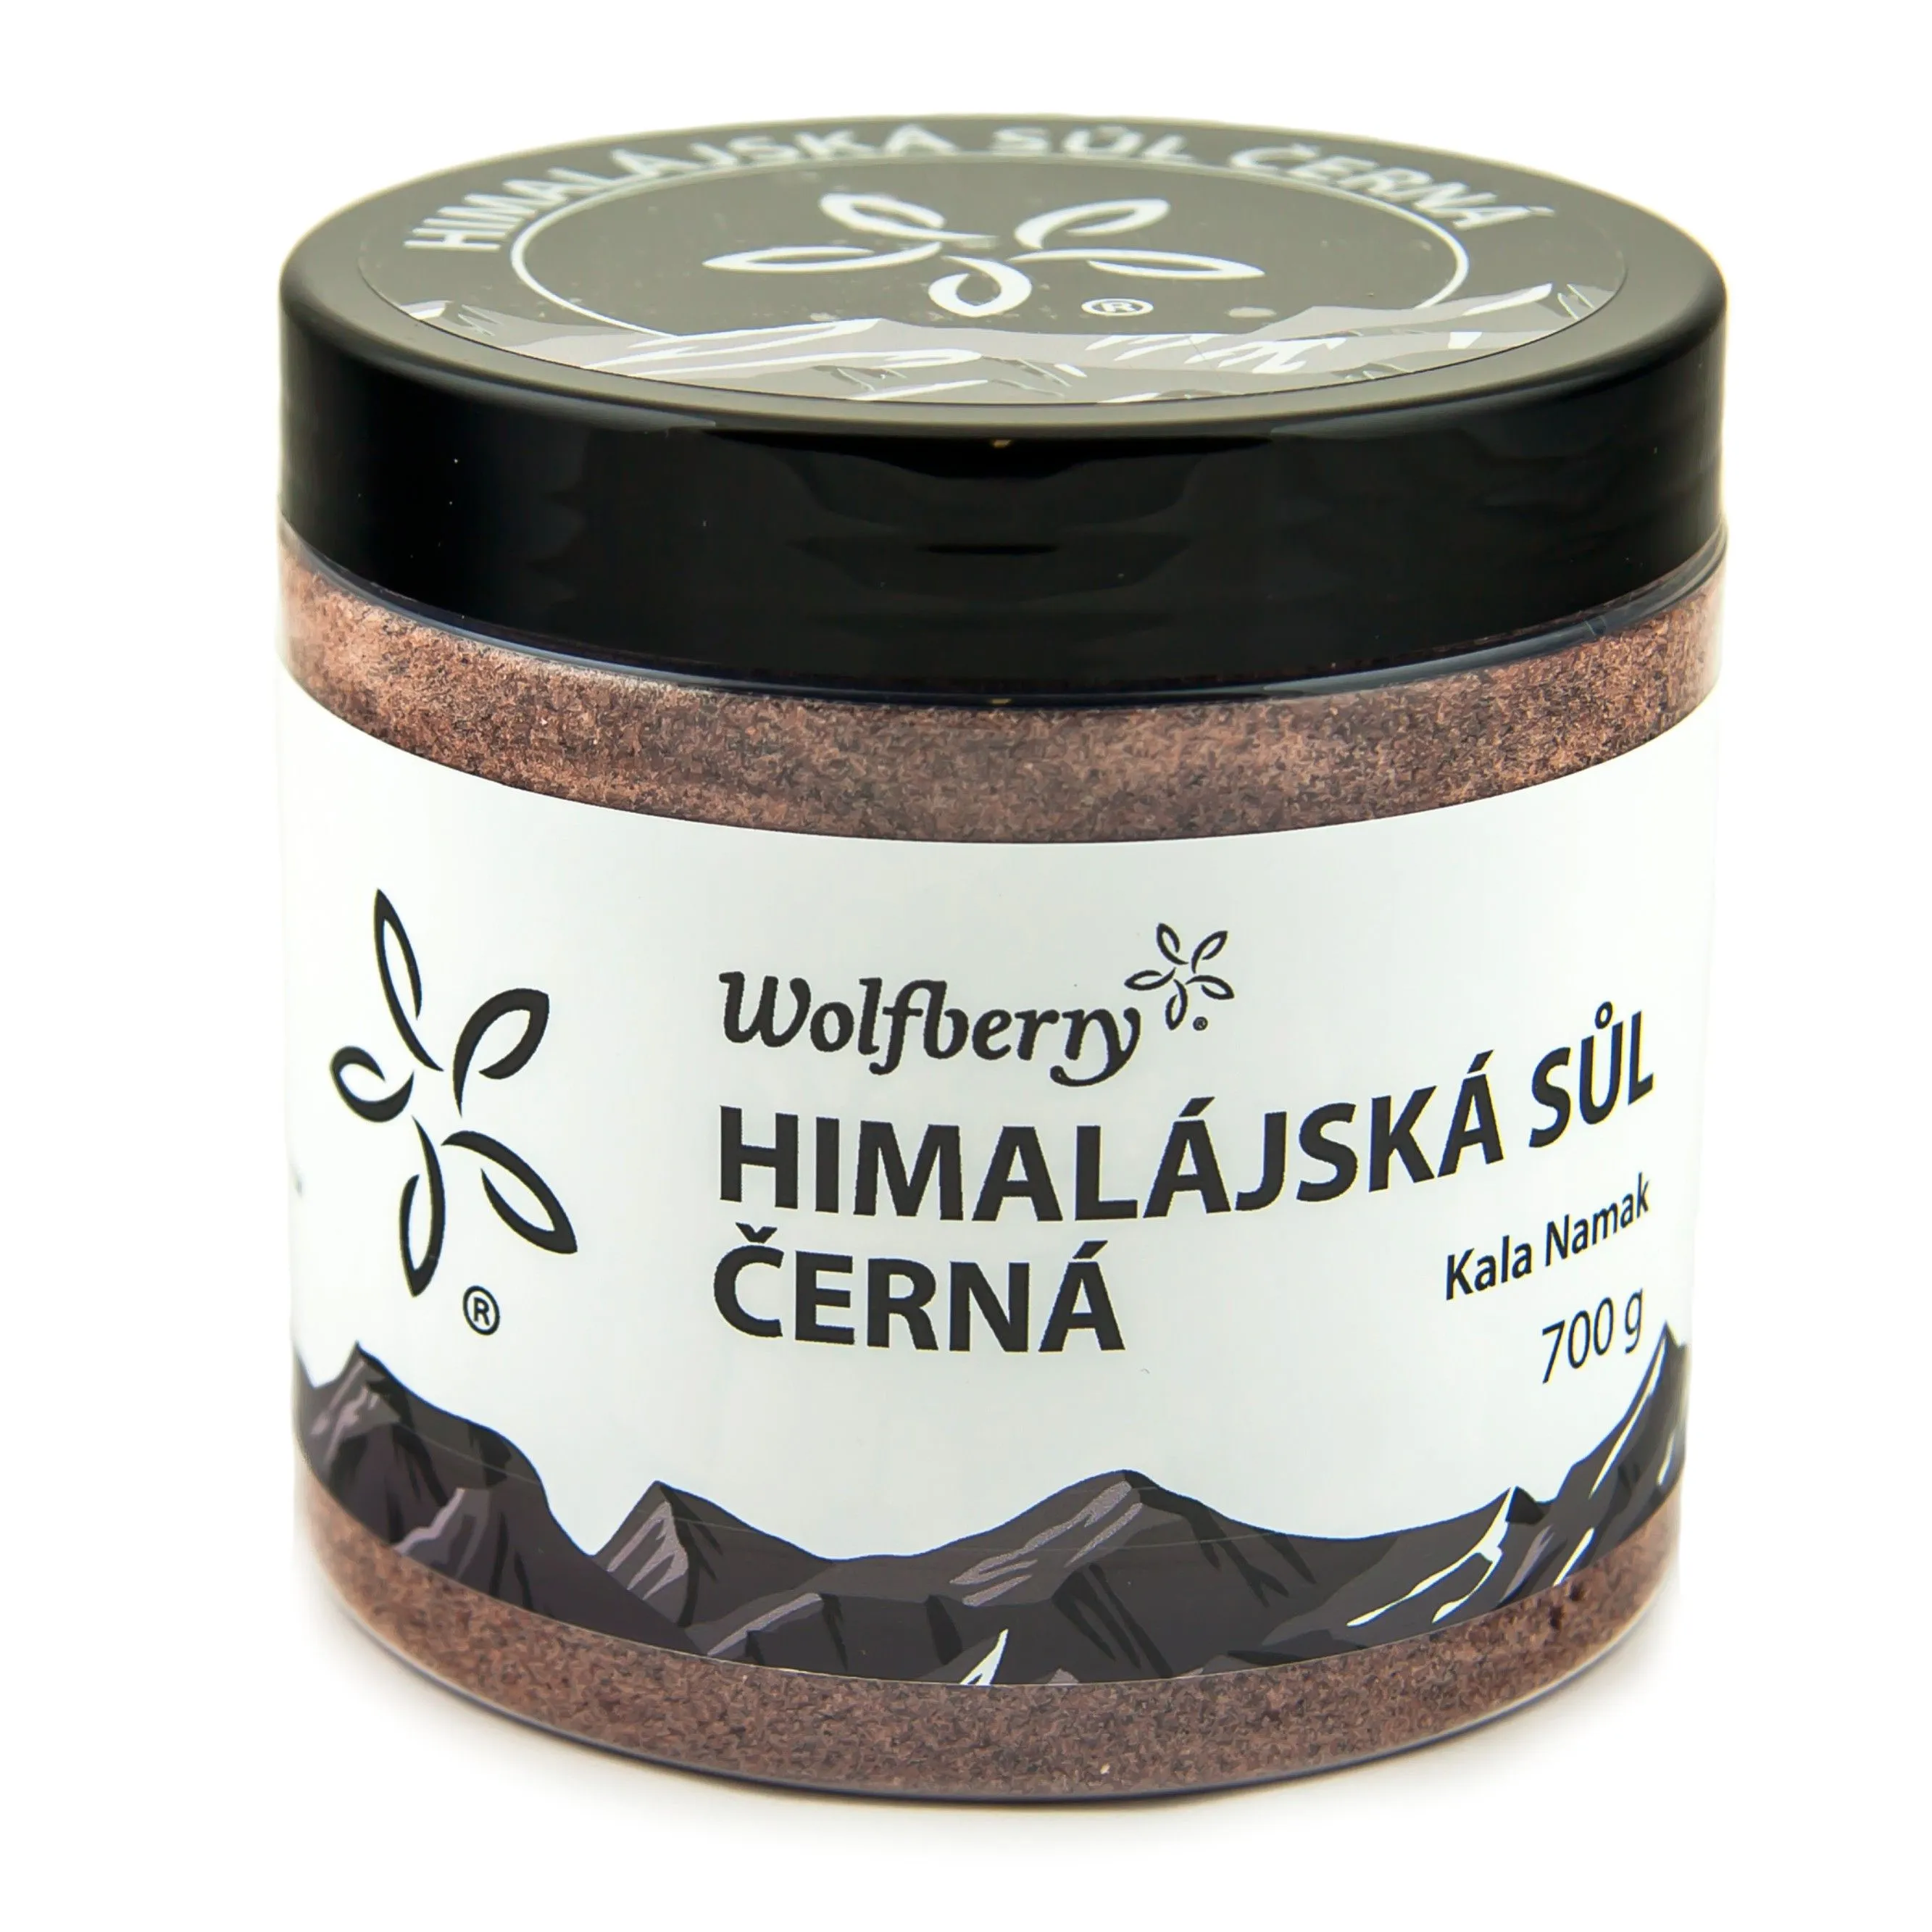 Wolfberry Himalajská sůl černá Kala Namak 700 g